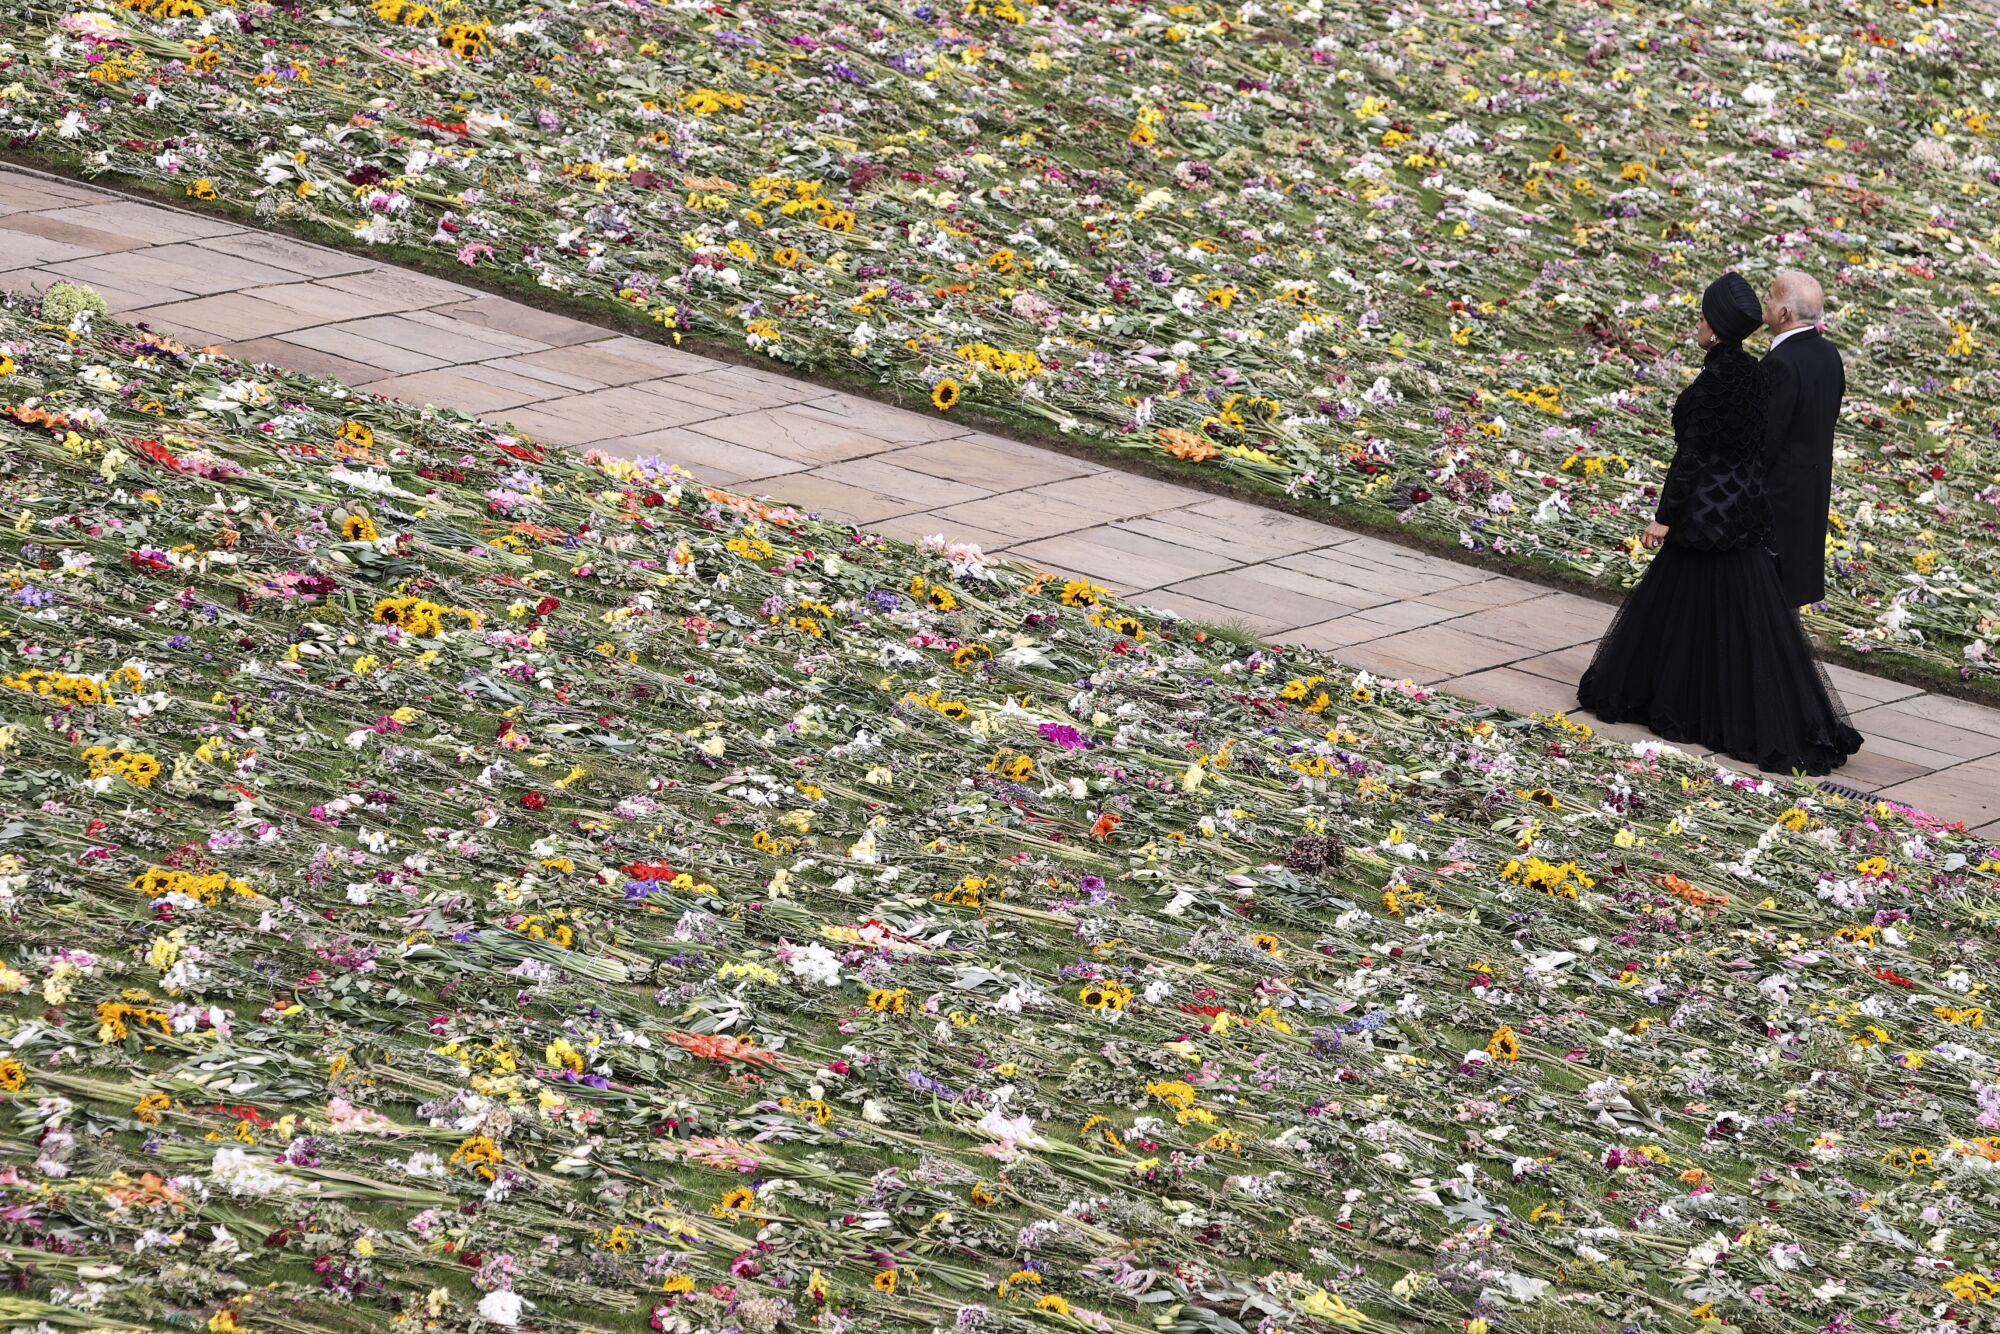 Siyah giyinmiş bir erkek ve kadın, çiçeklerle kaplı bir çimenliğin yanından kaldırımda yürüyorlar.